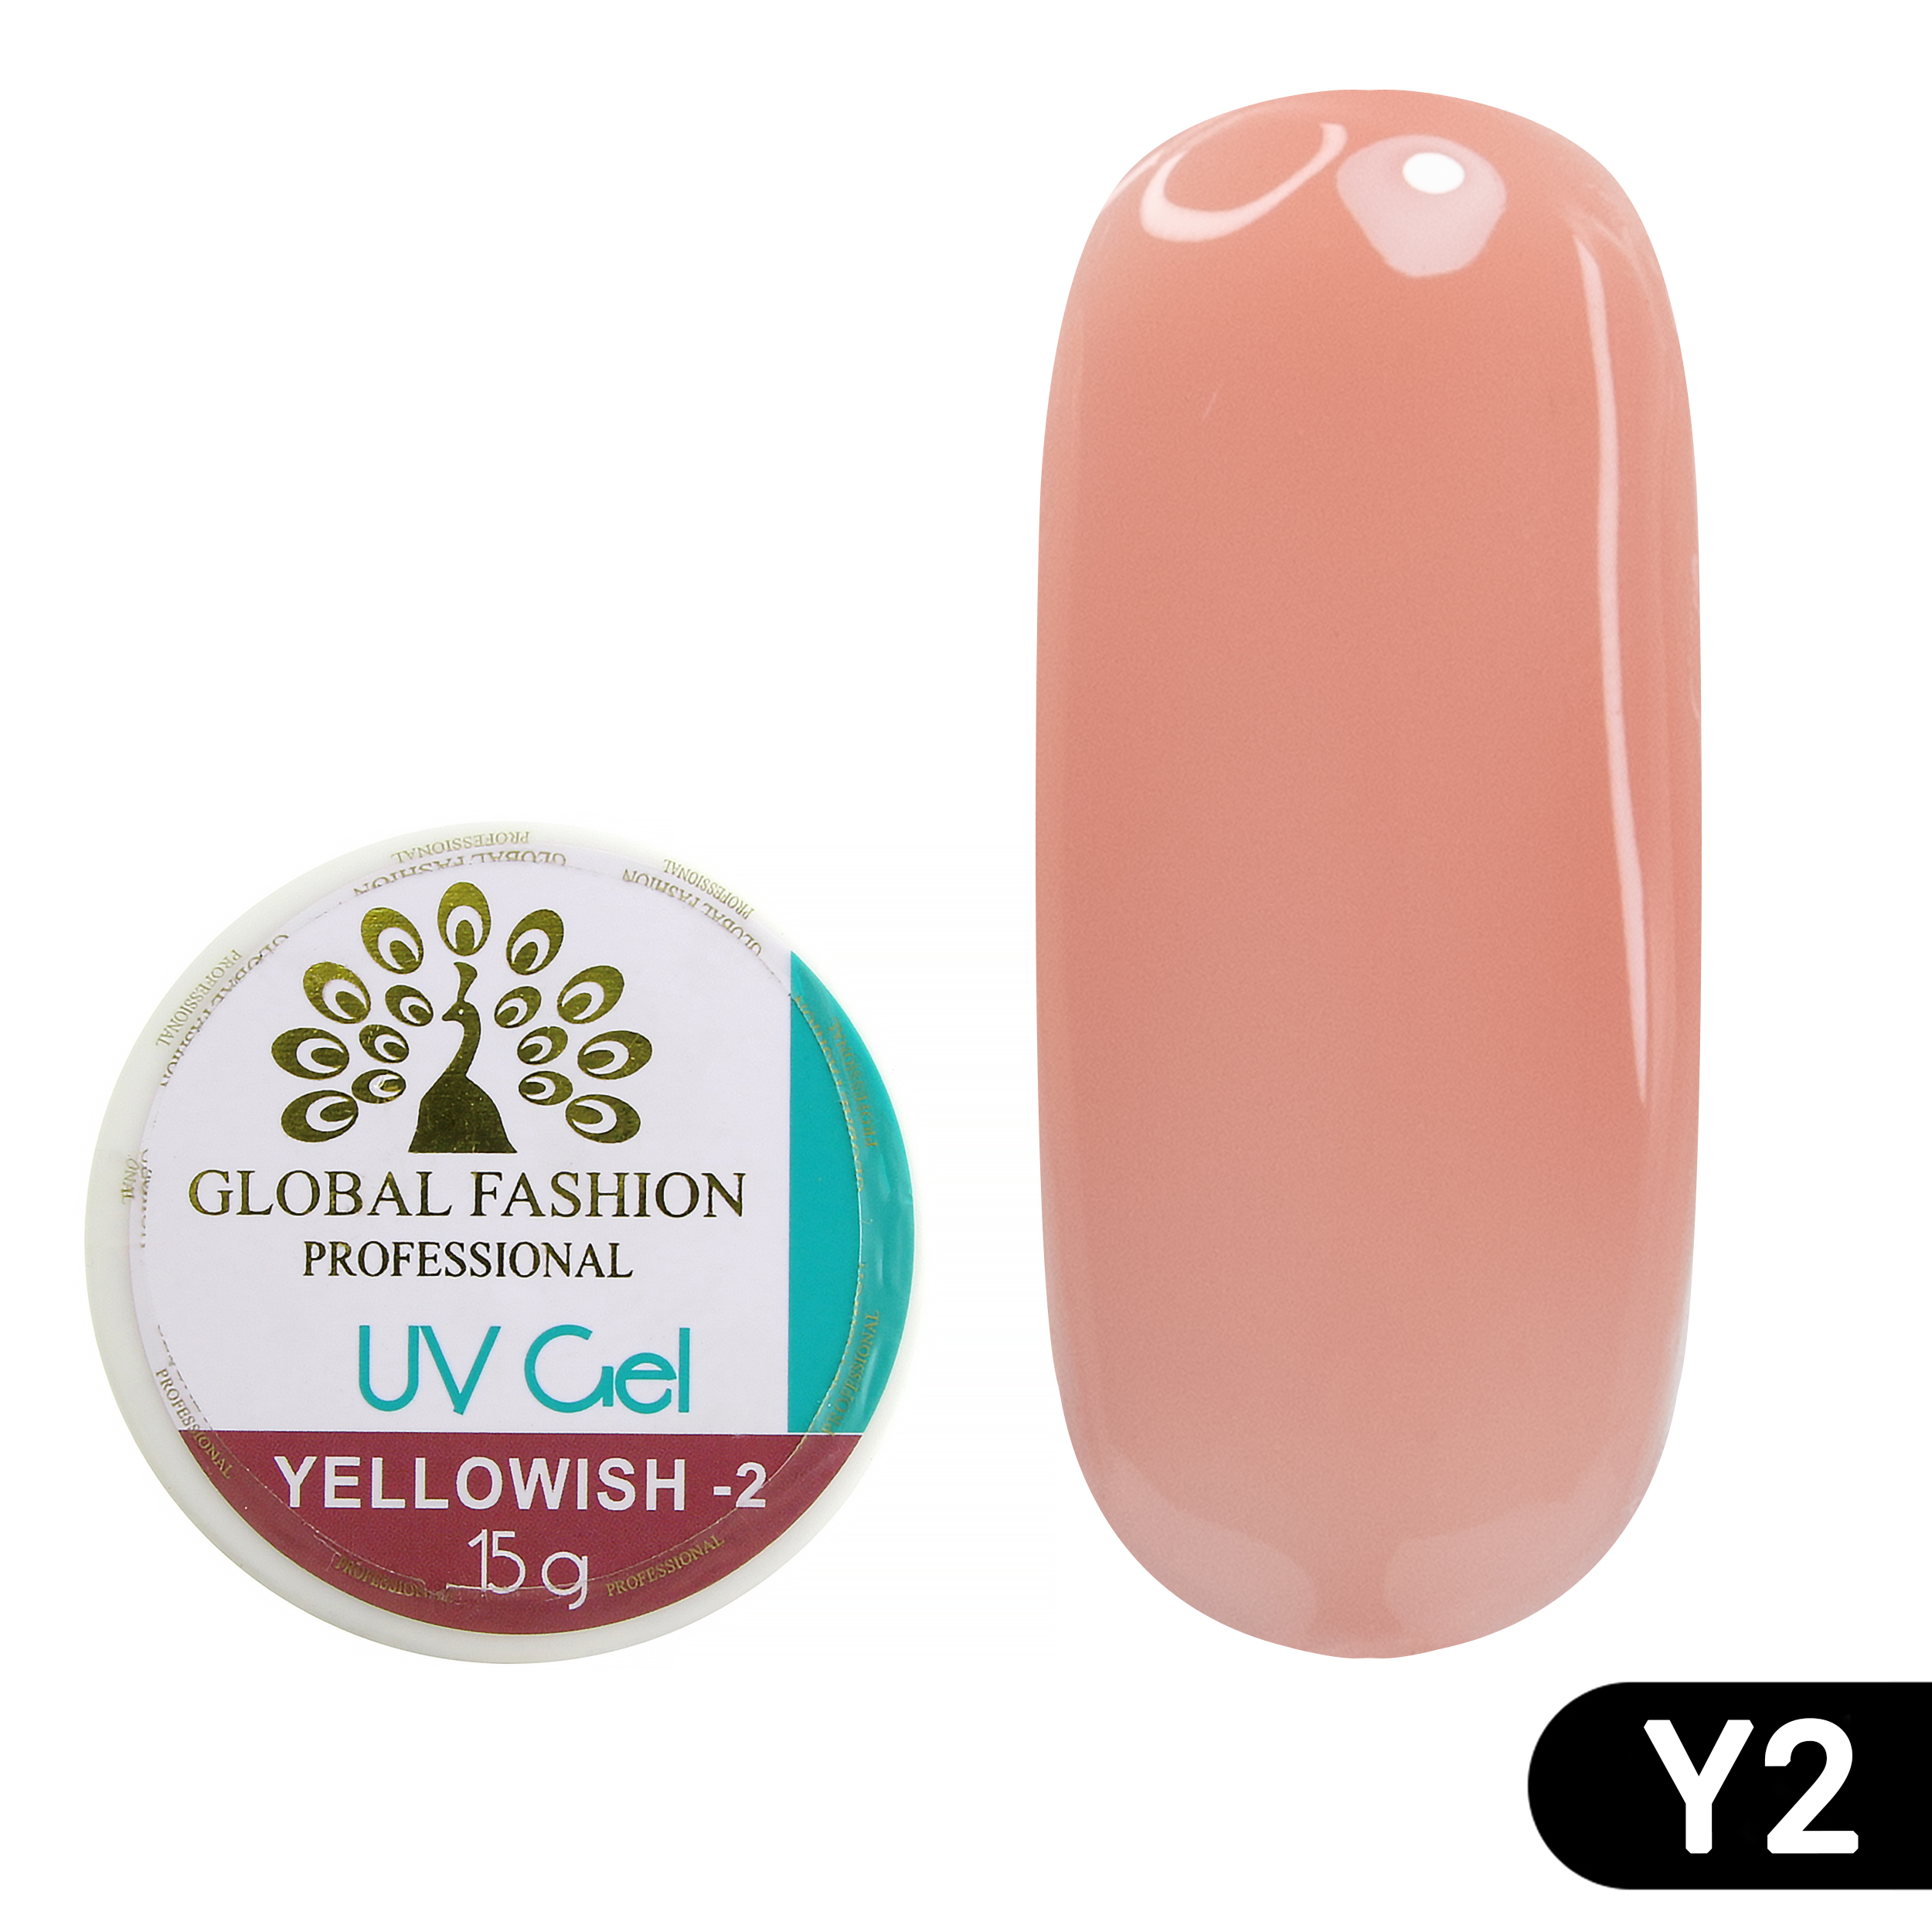 Купить Гель для наращивания ногтей Global Fashion камуфляж-2, Yellowish-2, 15 г